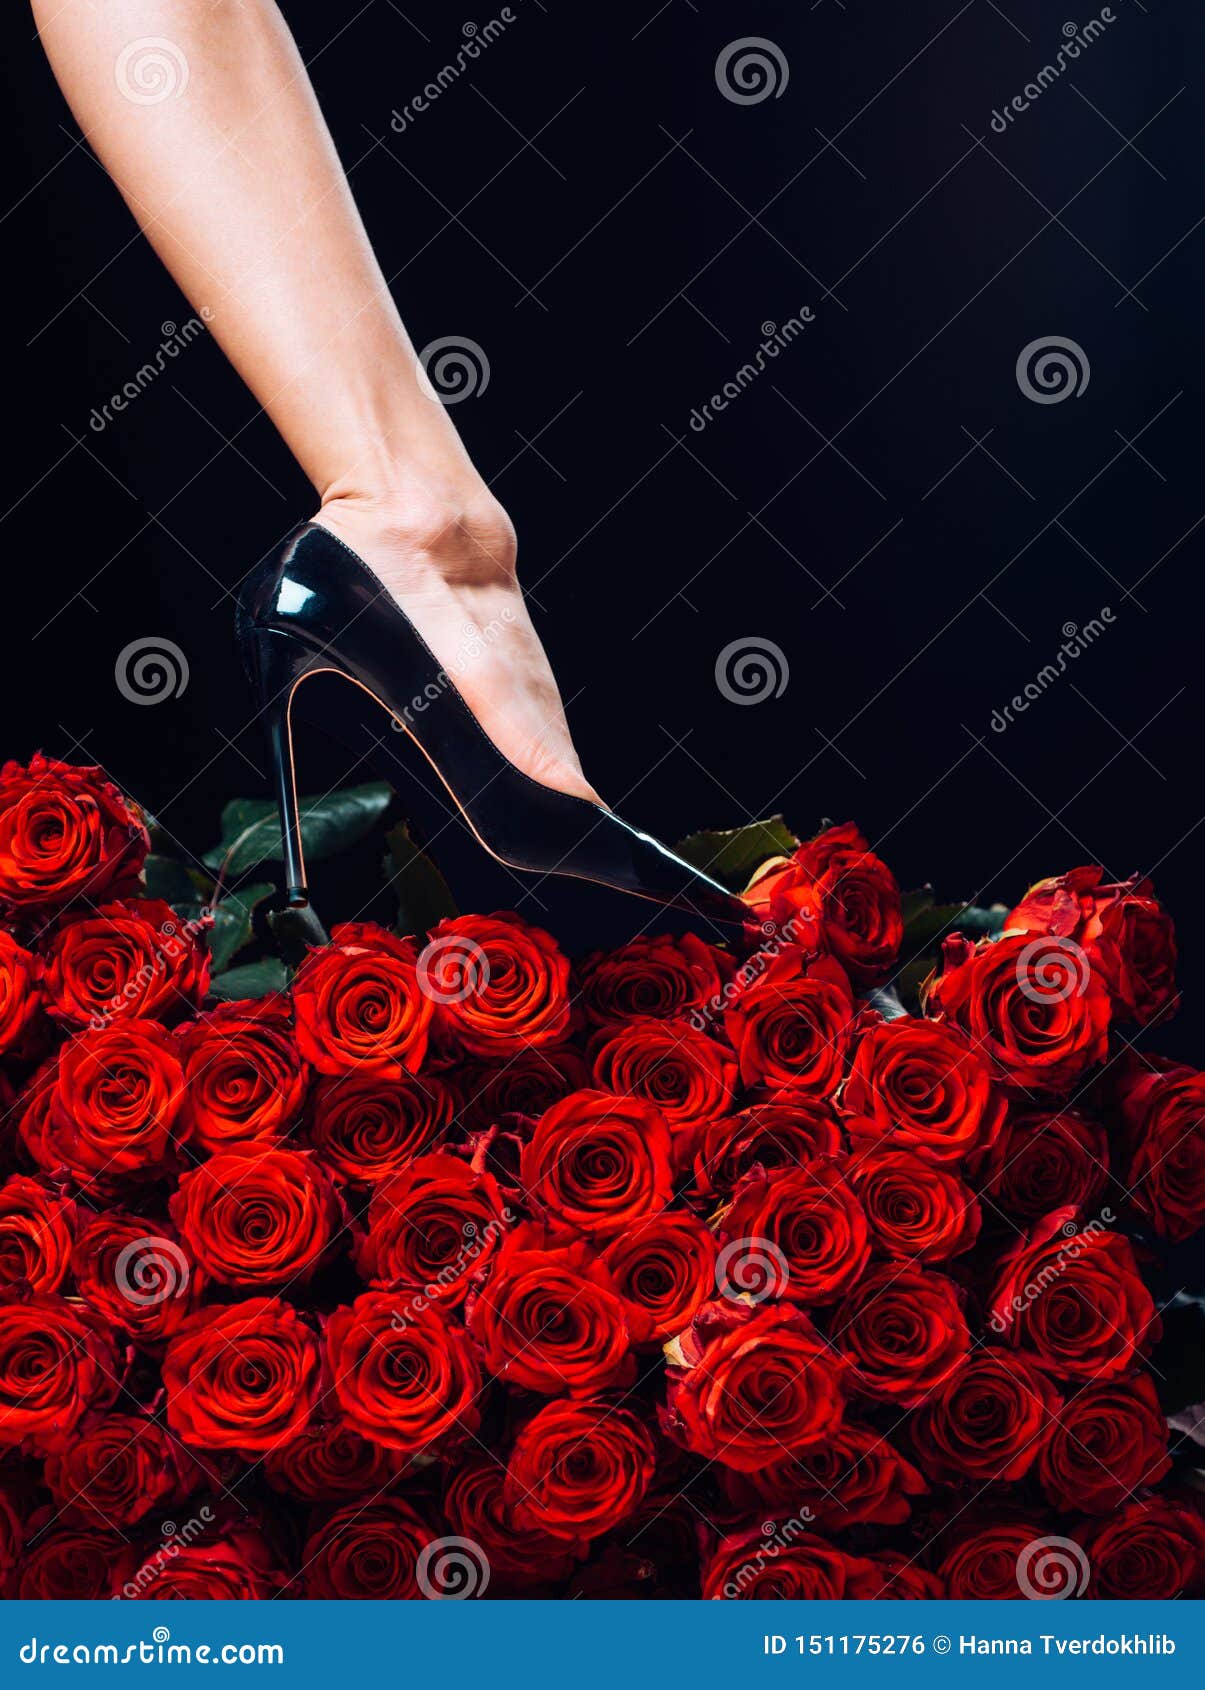 Цветы к ногам женщины. Цветы к ногам любимой женщины. Цветы к ногам женщины картинки красивые. Rose legs